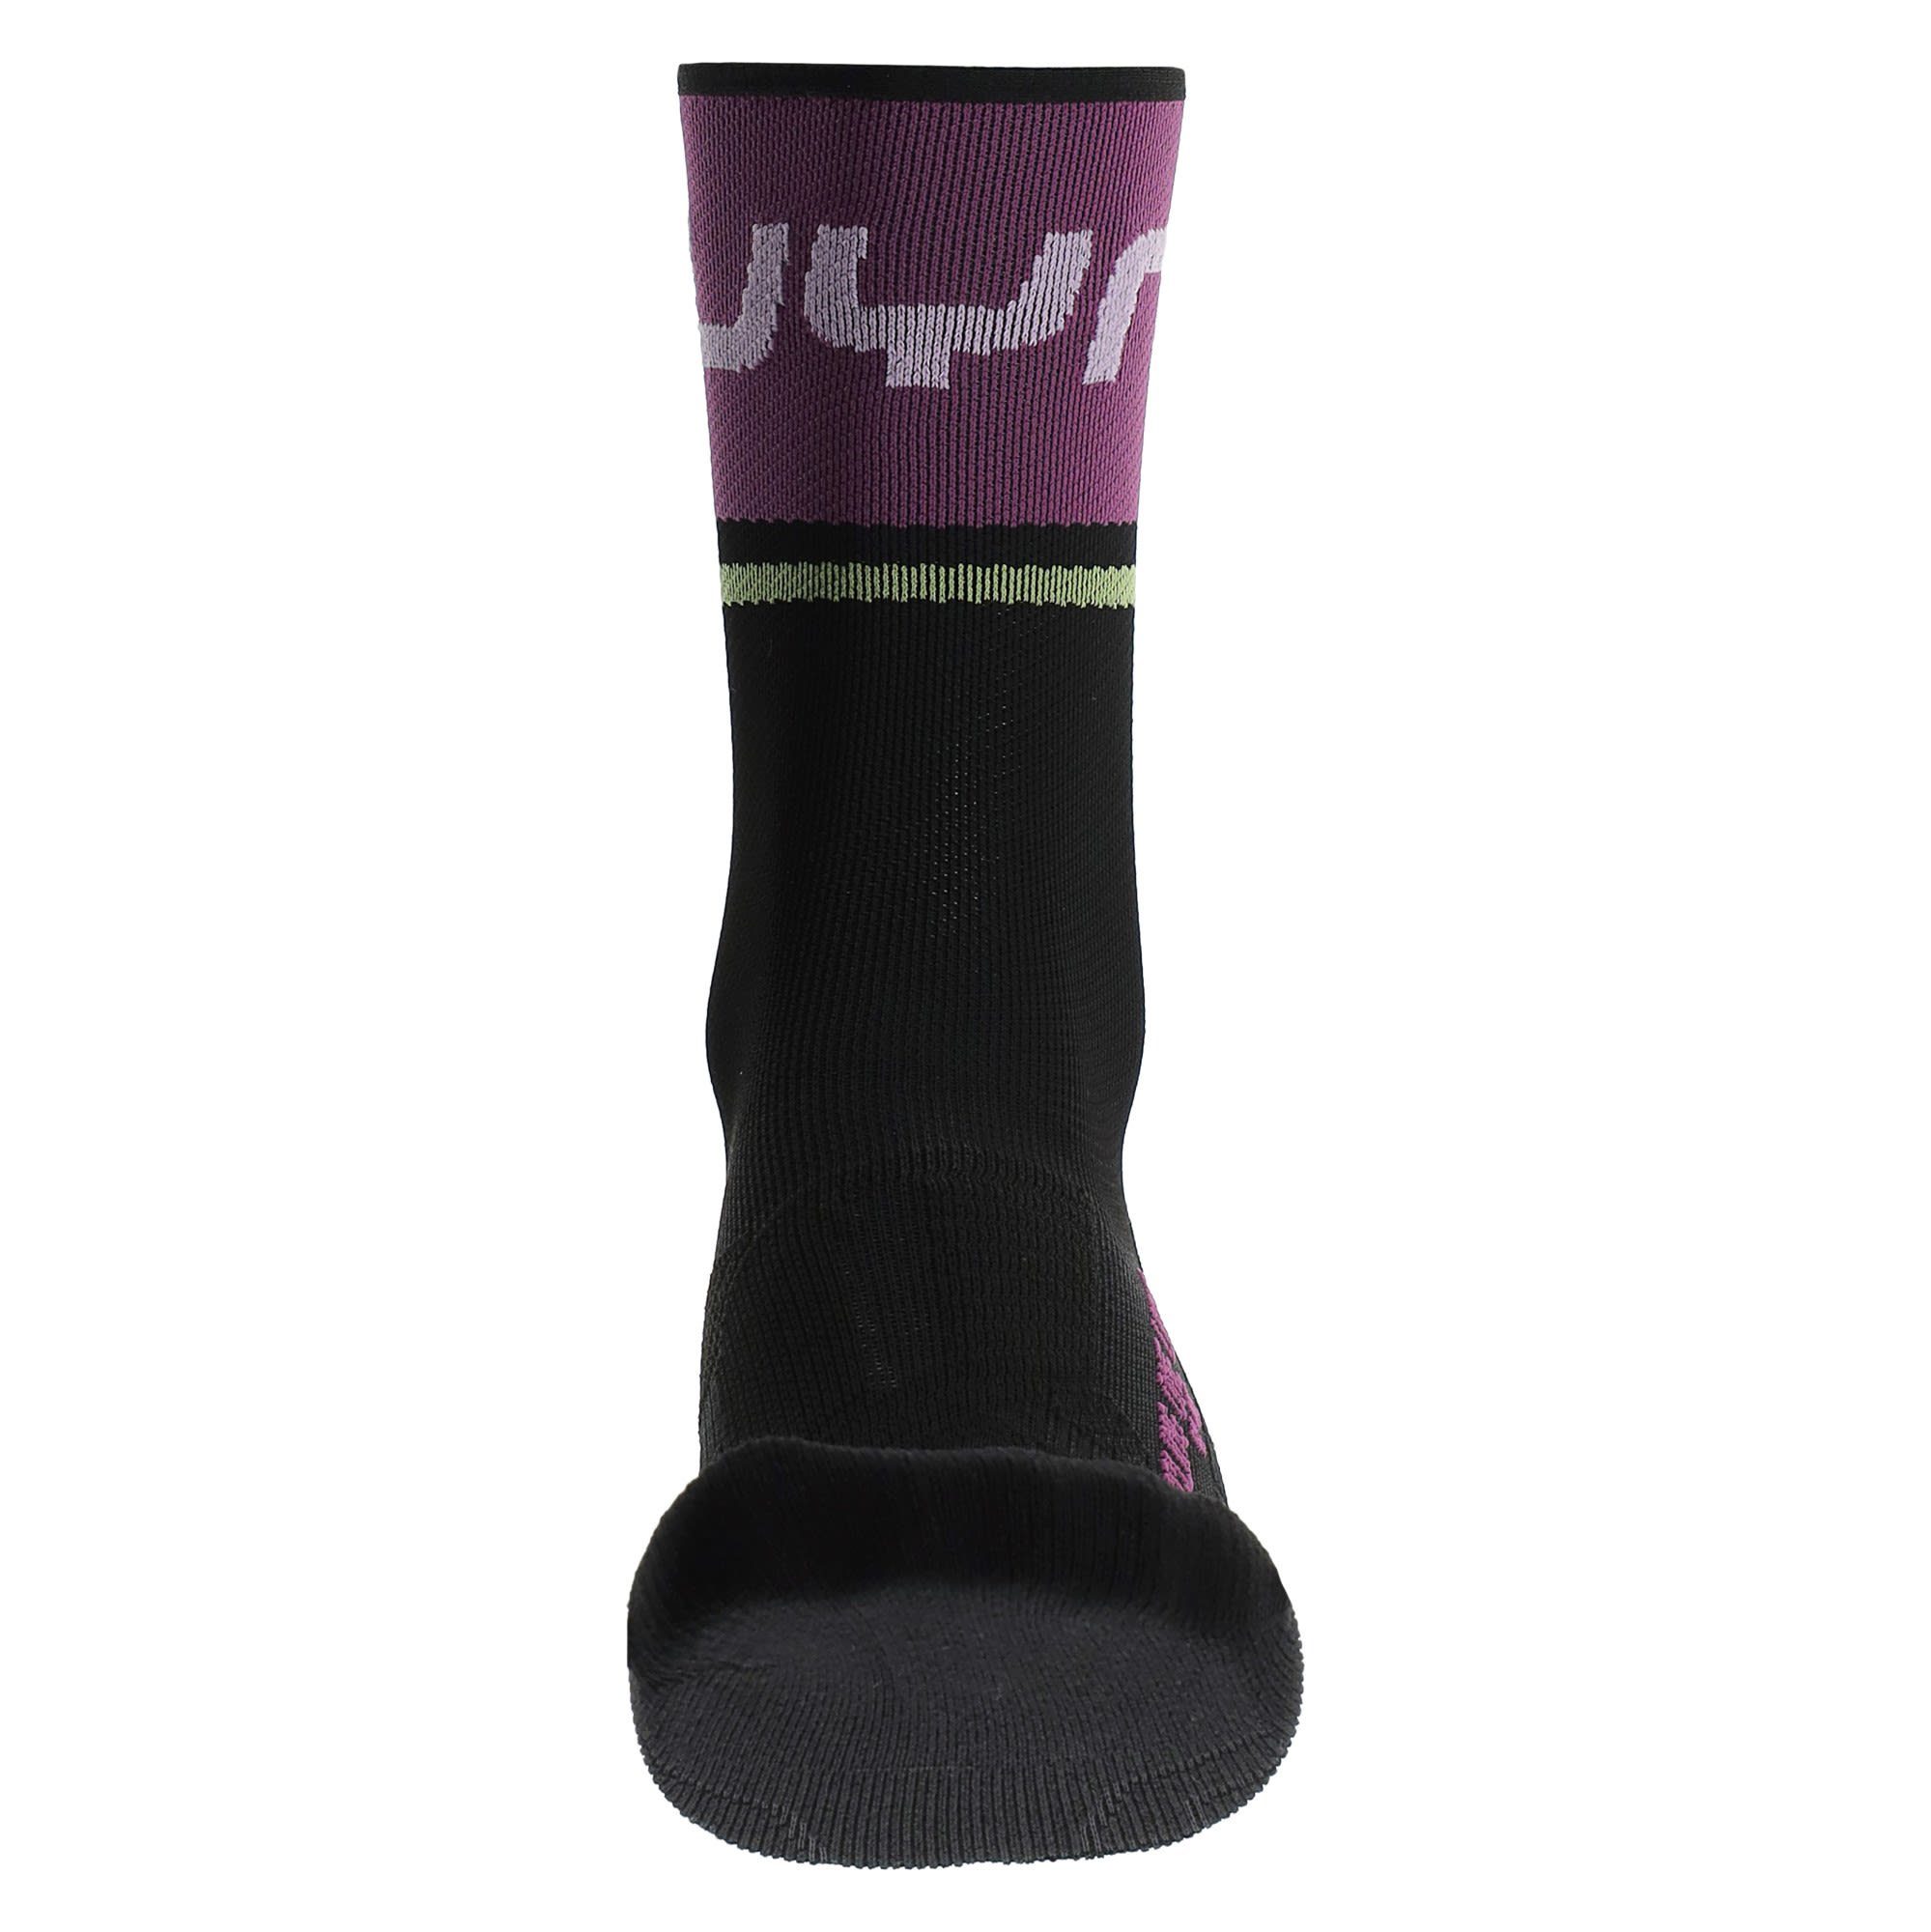 Black One W Light UYN Damen Skisocken Cycling Uyn Purple Socks -